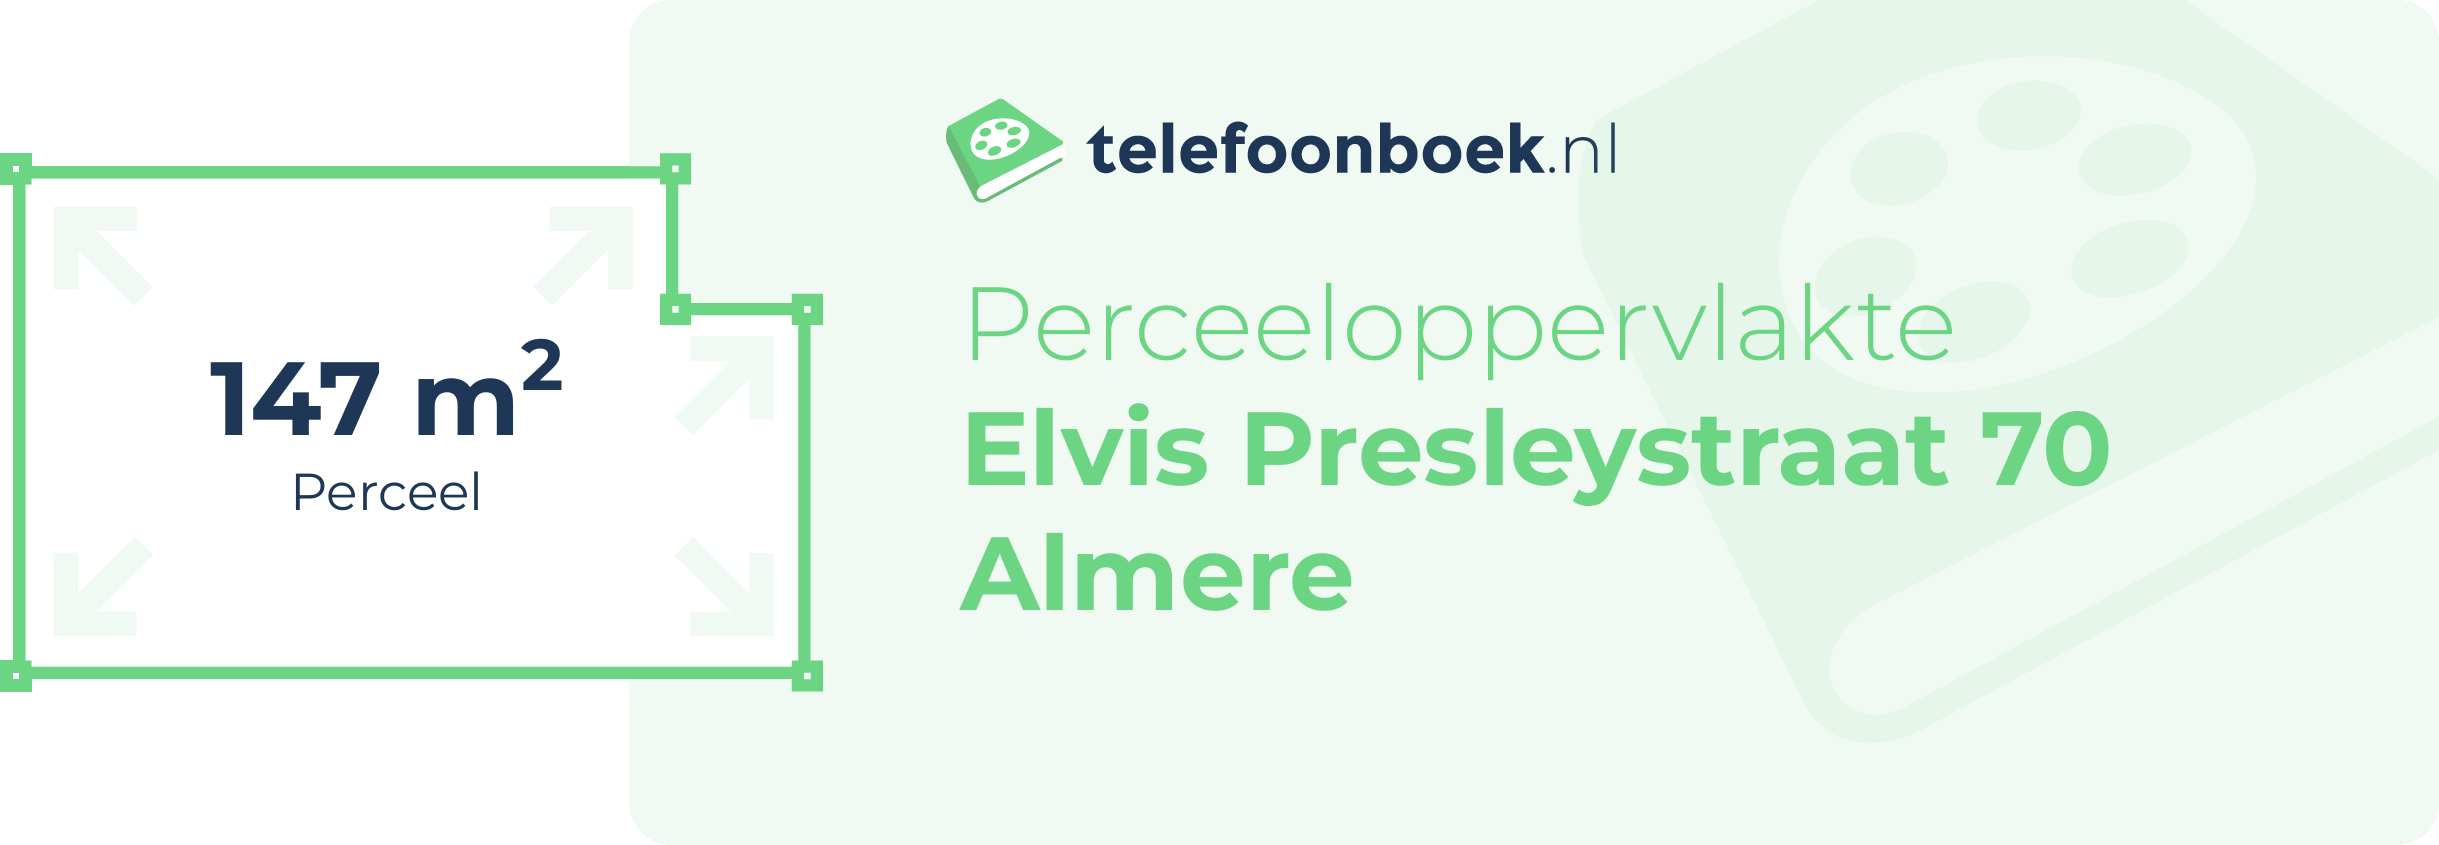 Perceeloppervlakte Elvis Presleystraat 70 Almere